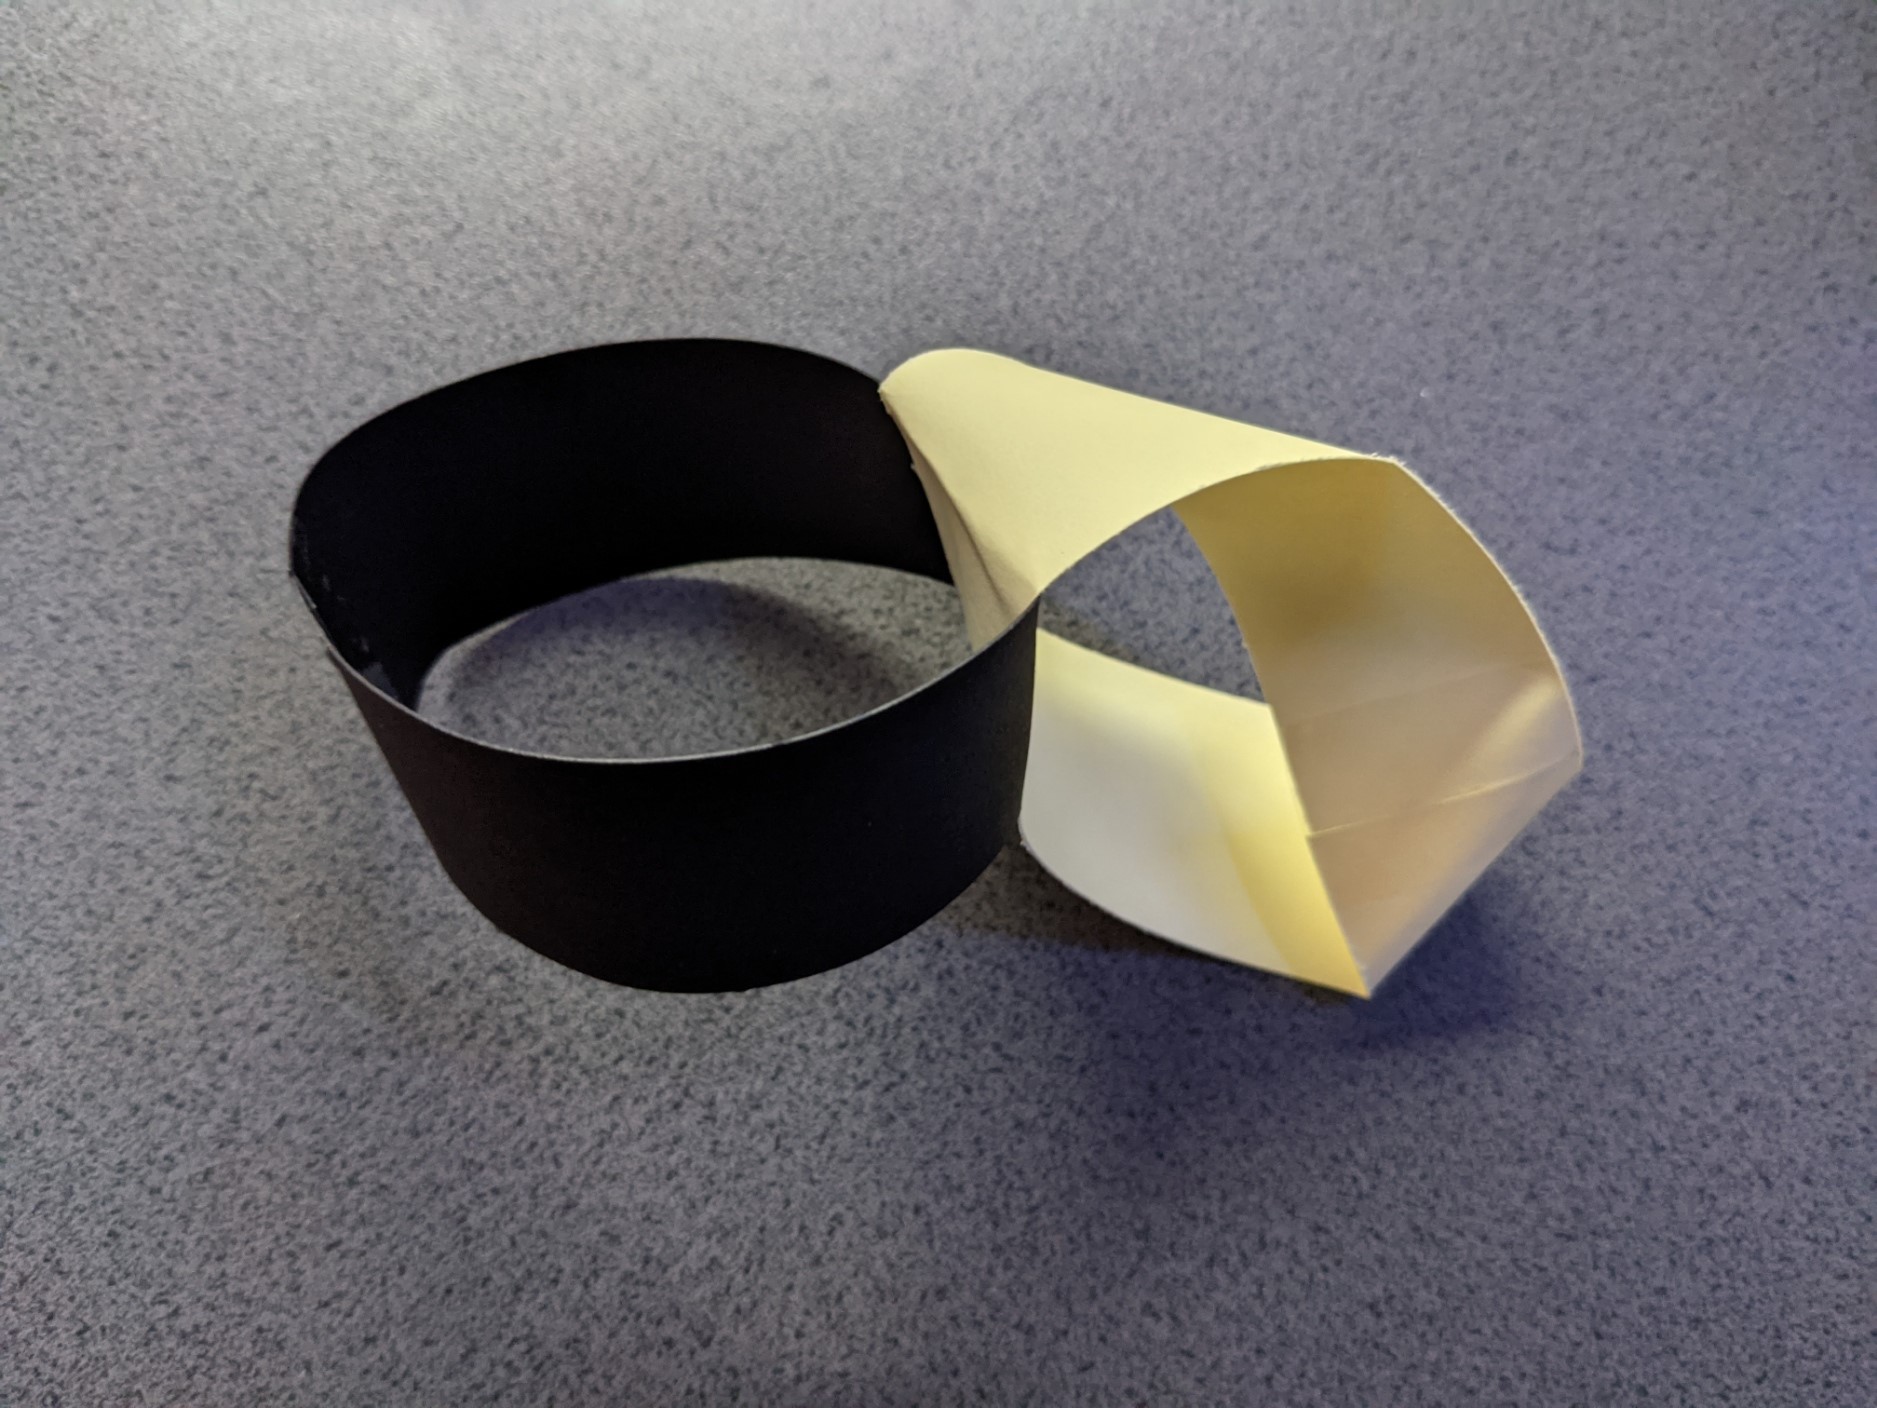 Connected loop and Möbius Strip